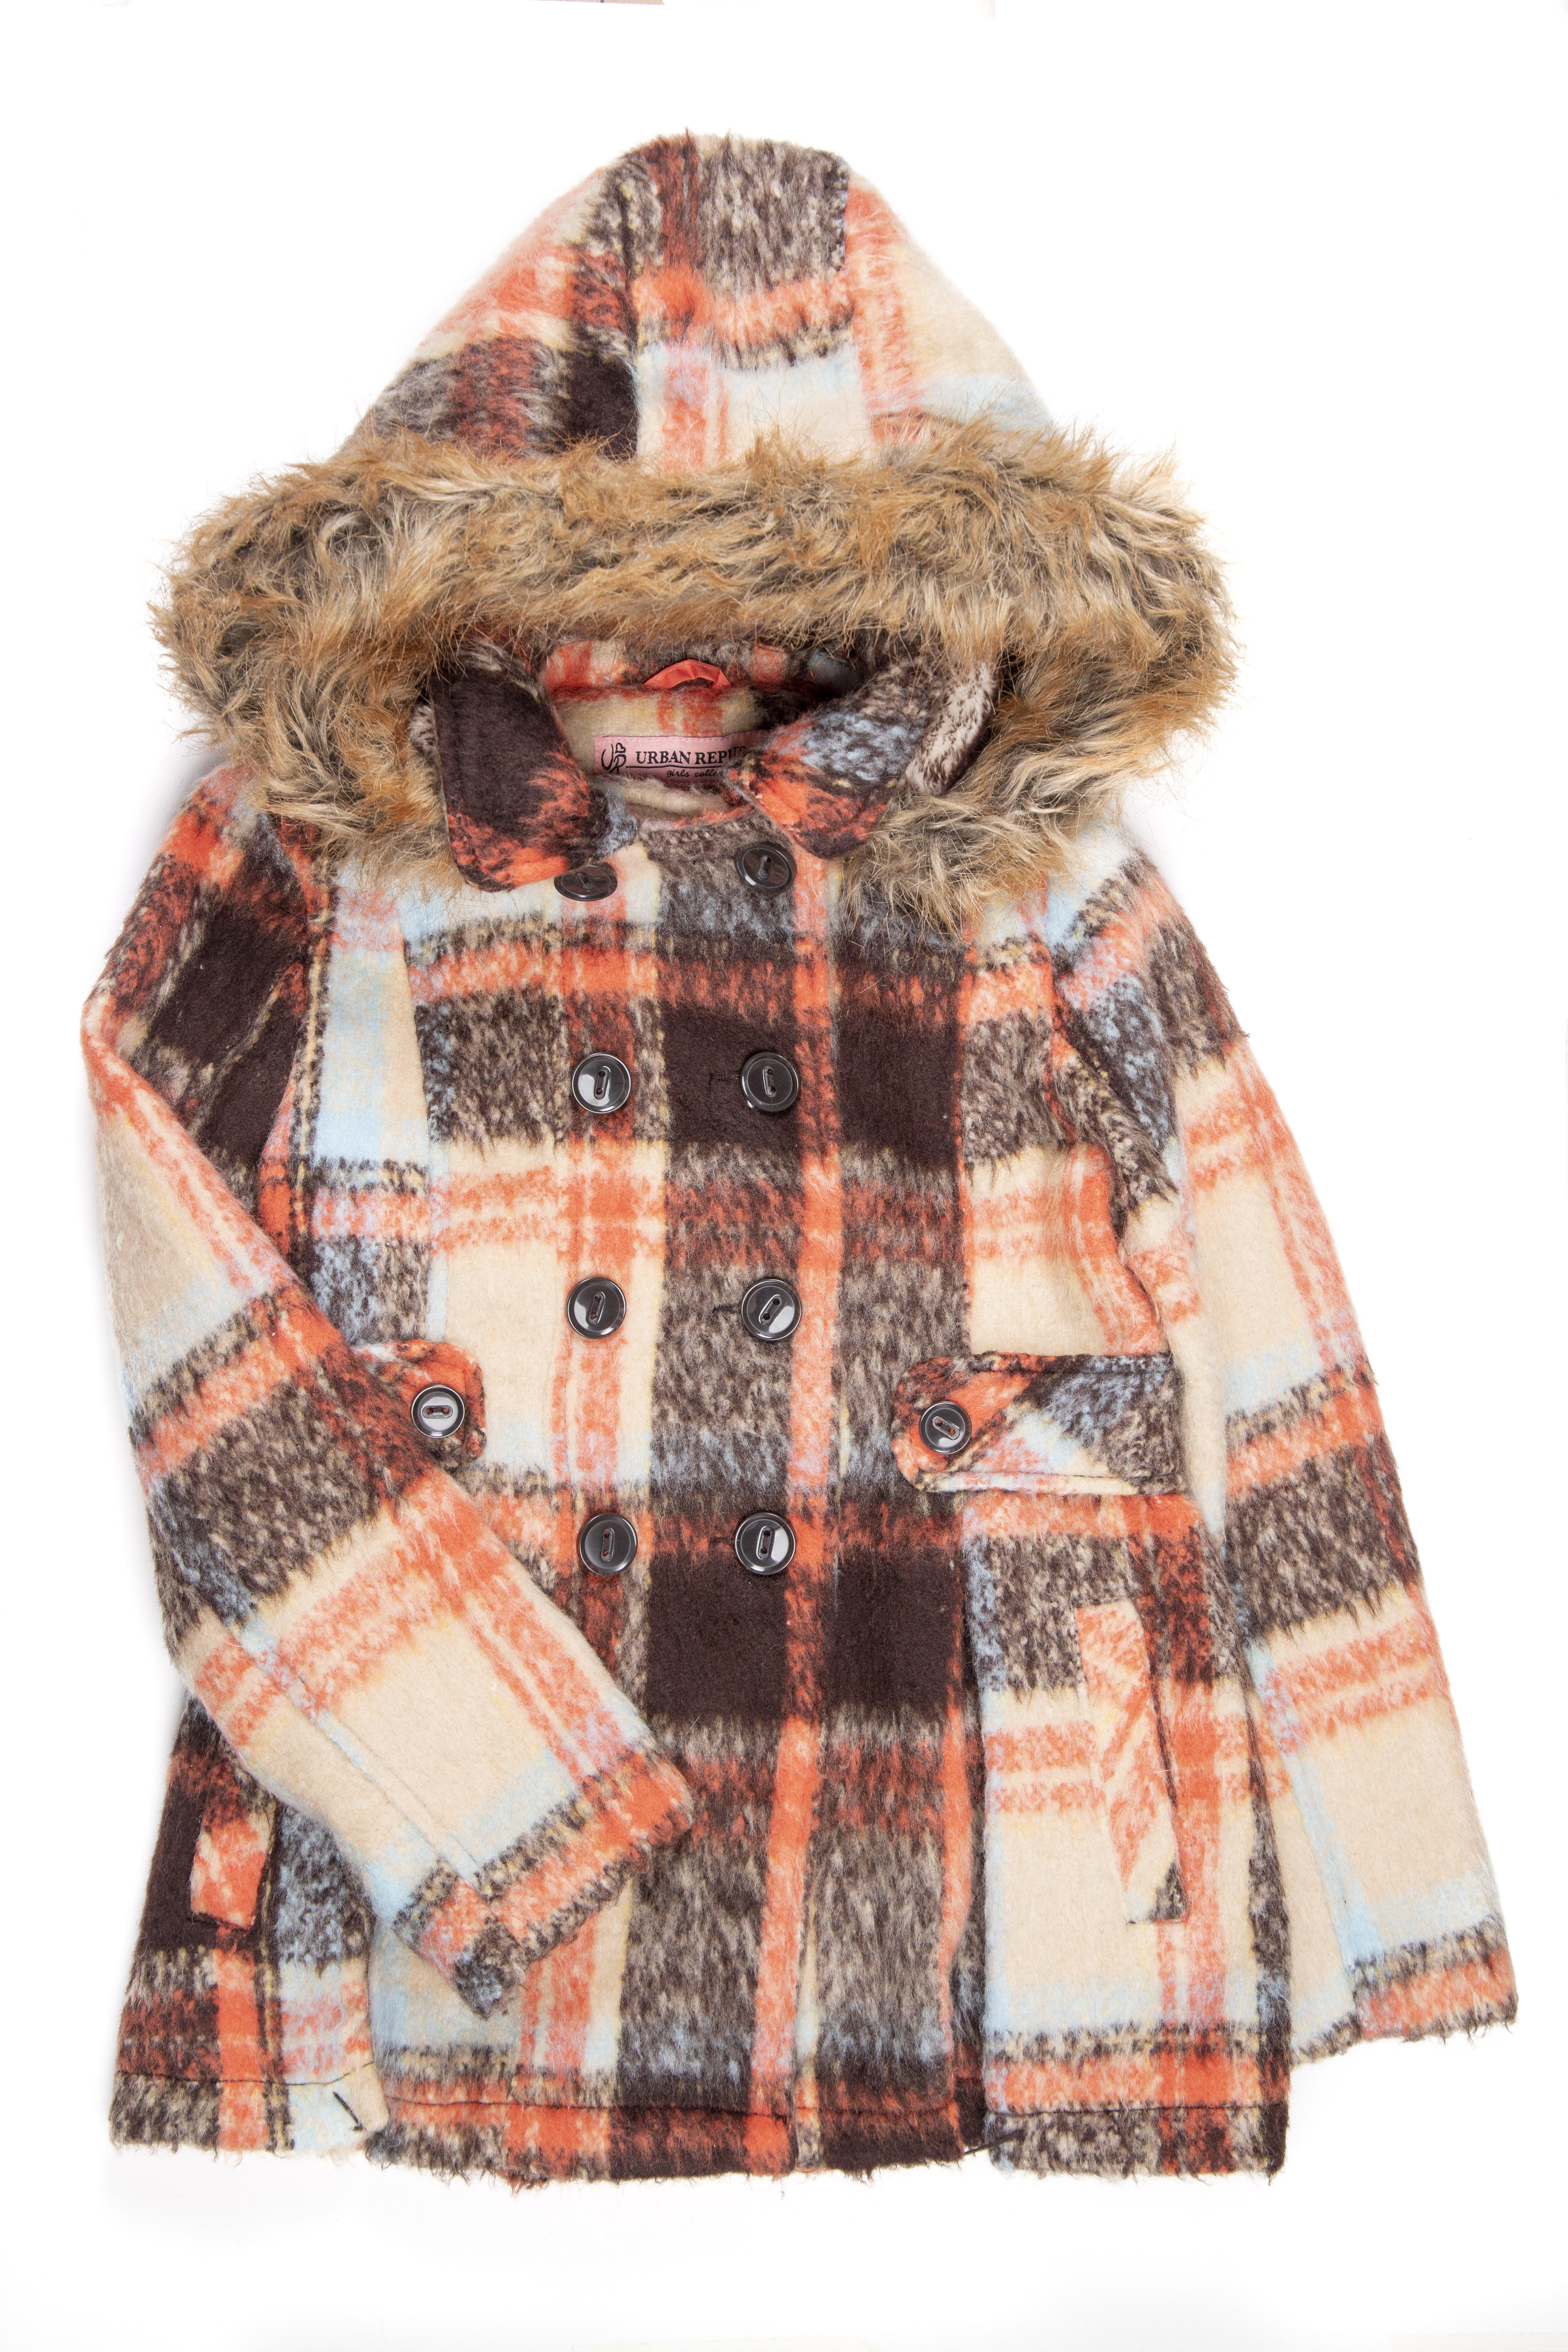 Abrigo escosés de colores con capucha removible de polar por dentro y borde de peluche  - Urban Republic